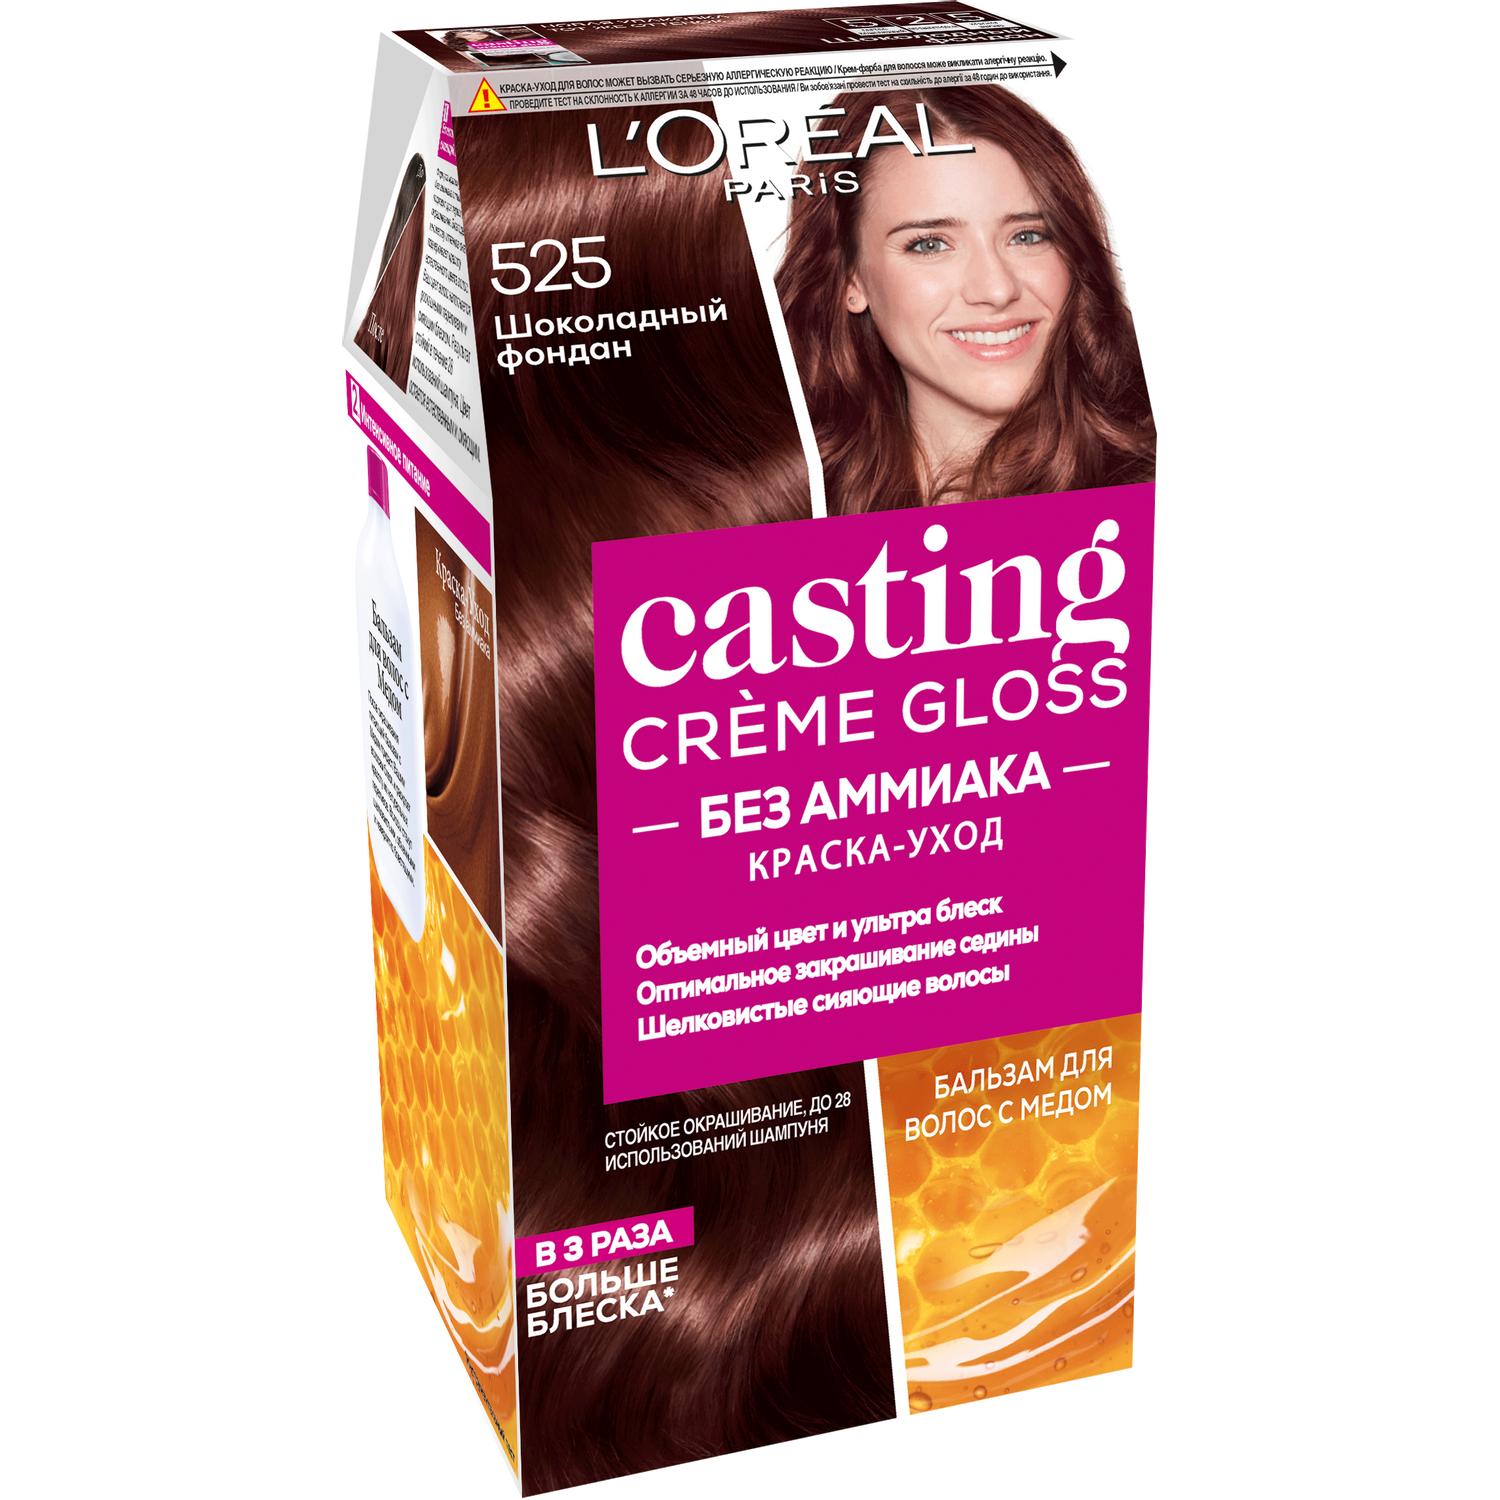 фото Краска для волос l'oreal paris casting creme gloss 525 шоколадный фондан l'oréal paris